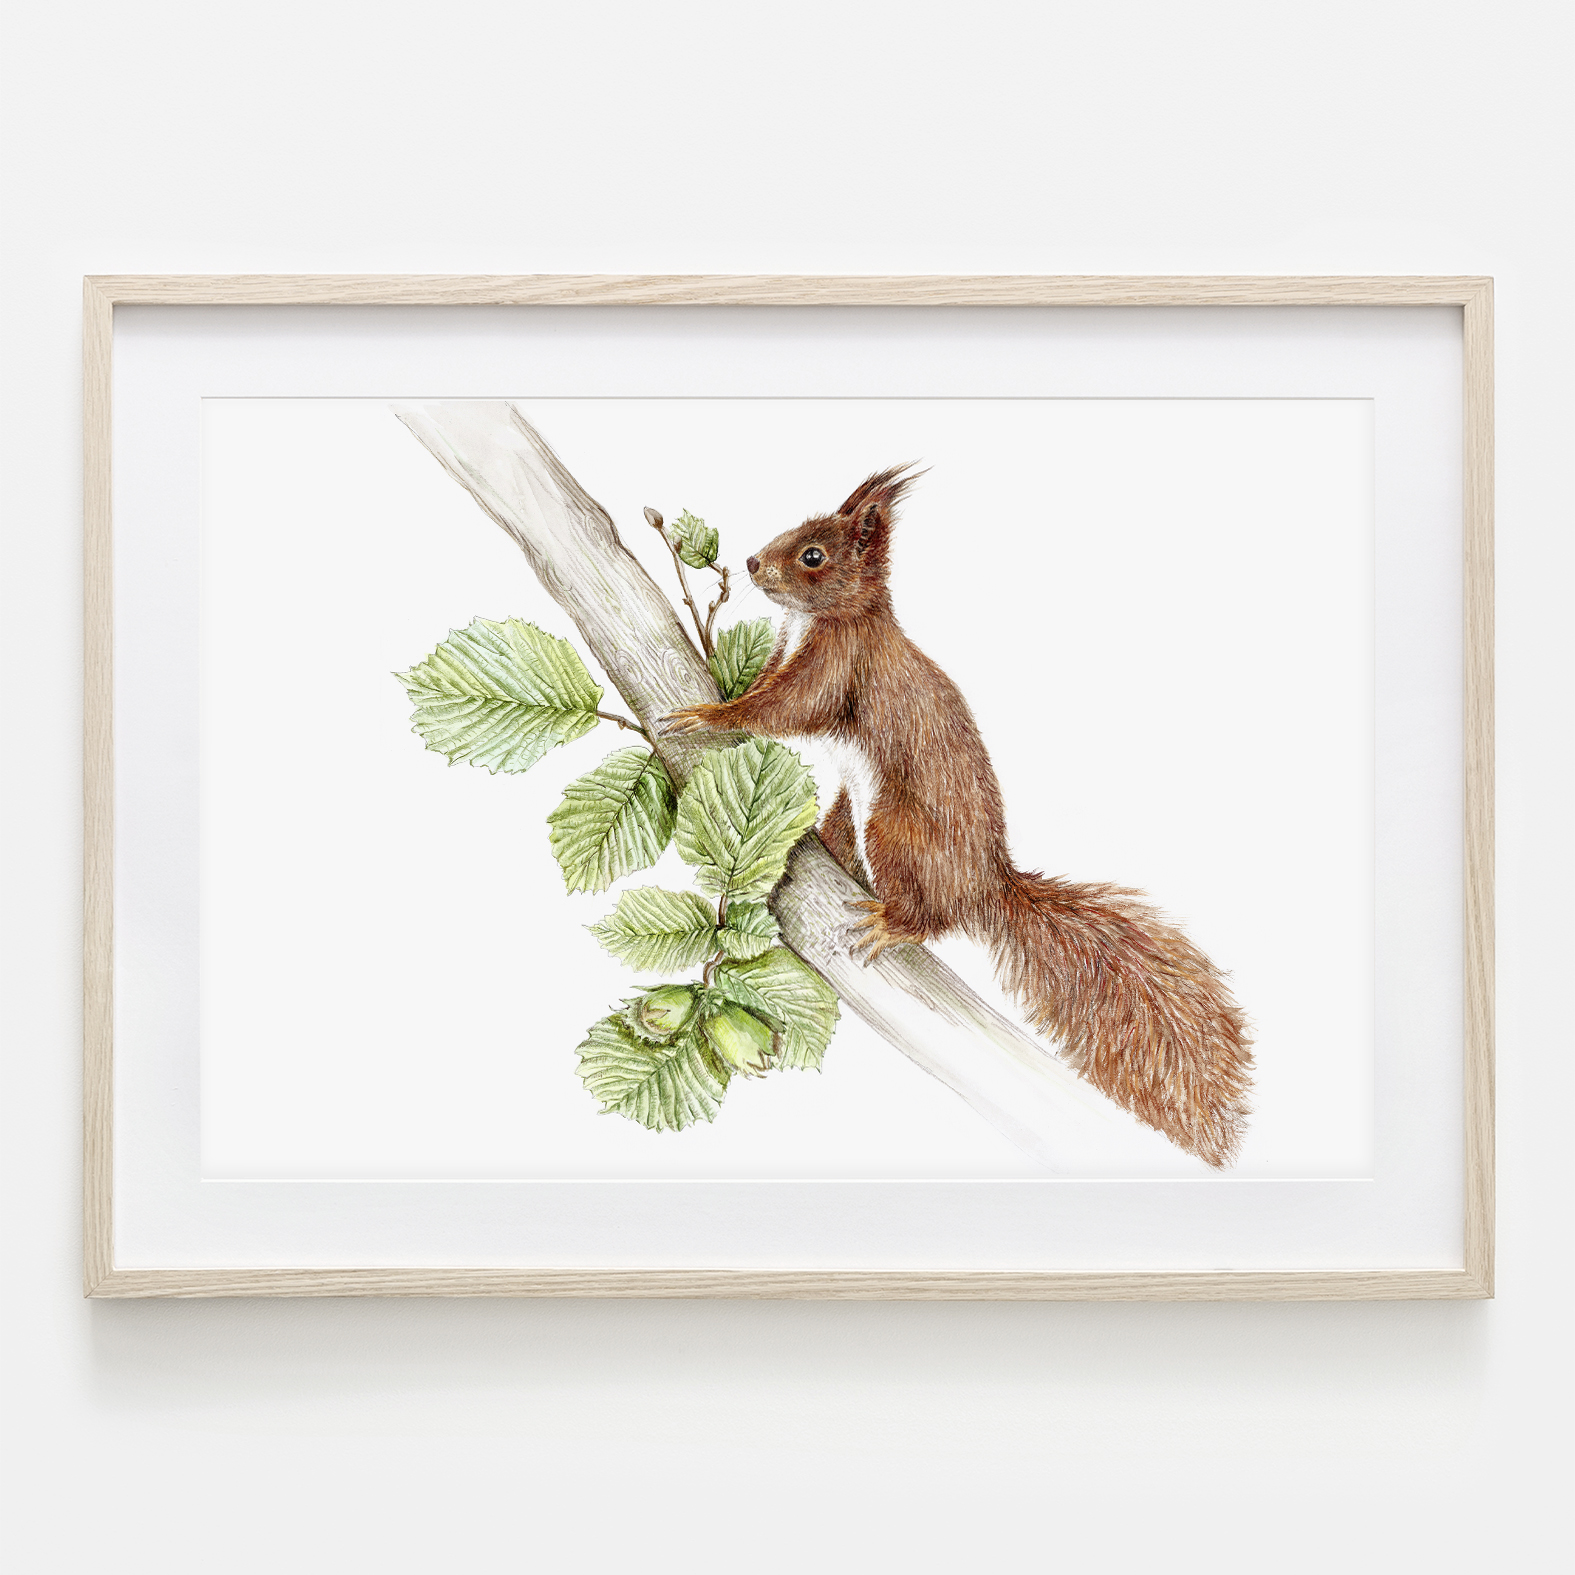 Eichhörnchen im Nussbaum Fine Art Print Giclée Print Poster Kunstdruck Tier Zeichnung